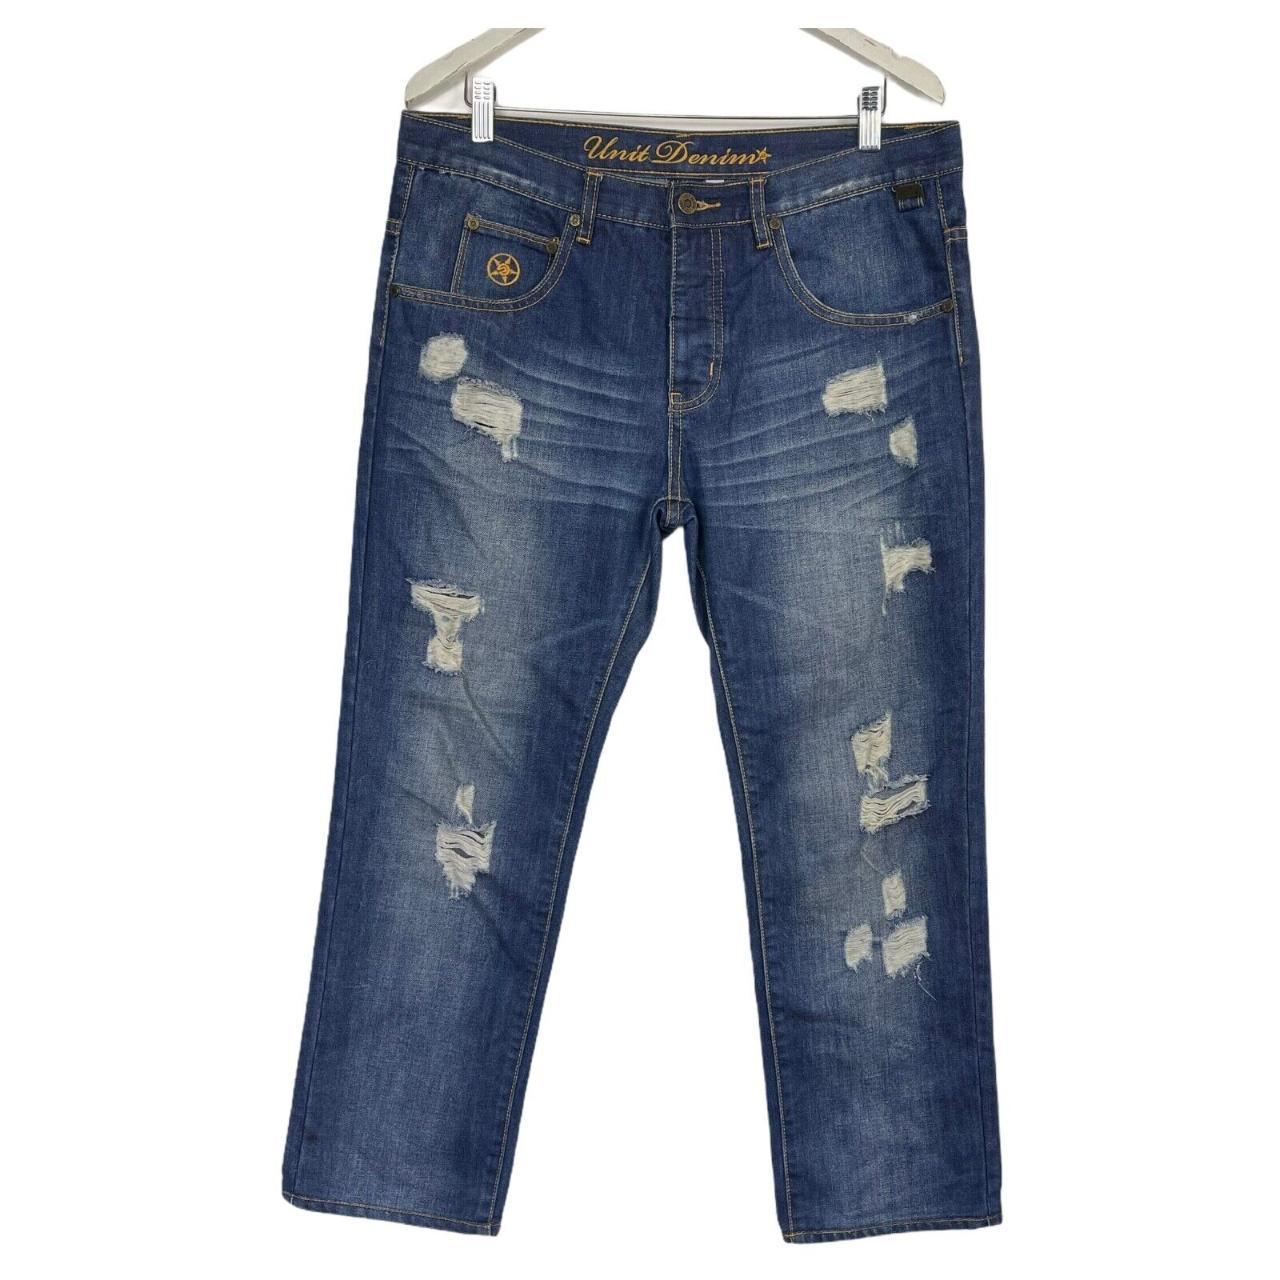 Unit Denim Womens Jeans Size 12 - Depop